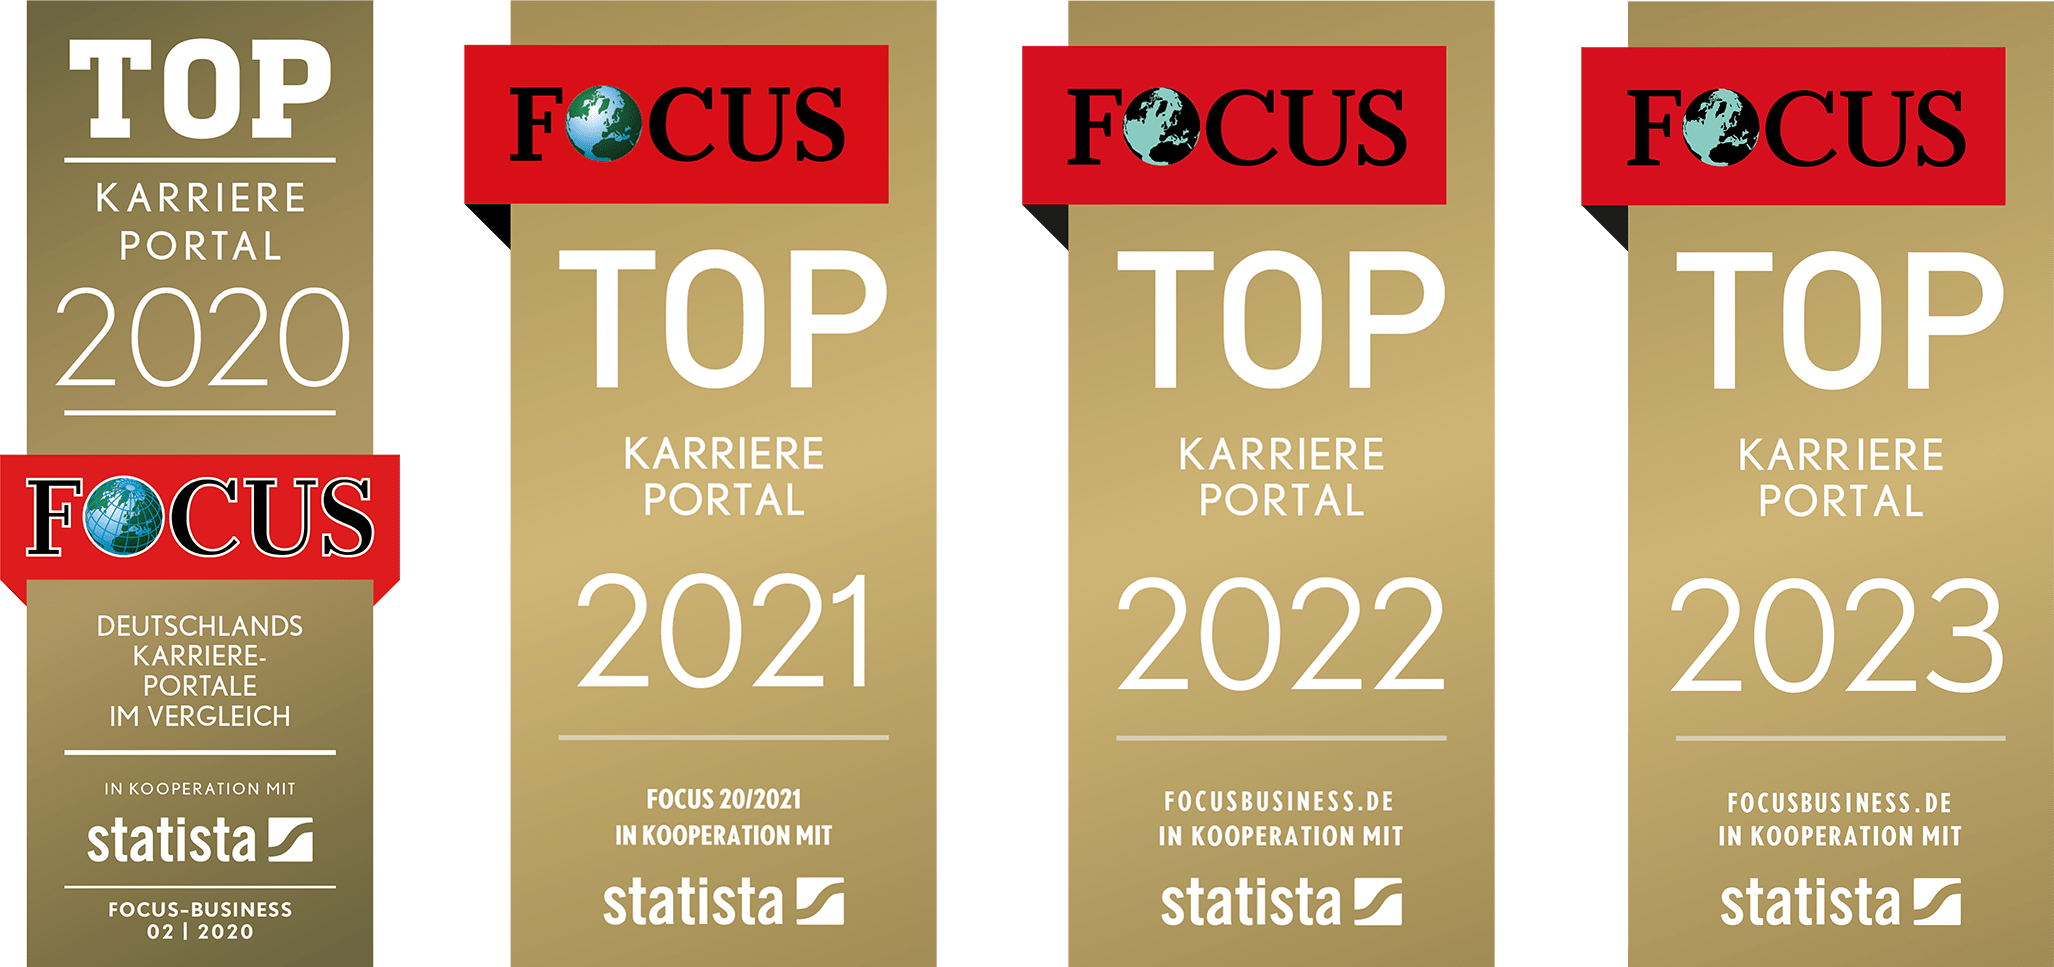 FOCUS Gütesiegel Top Karriereportal 2020,2021,2022 und 2023